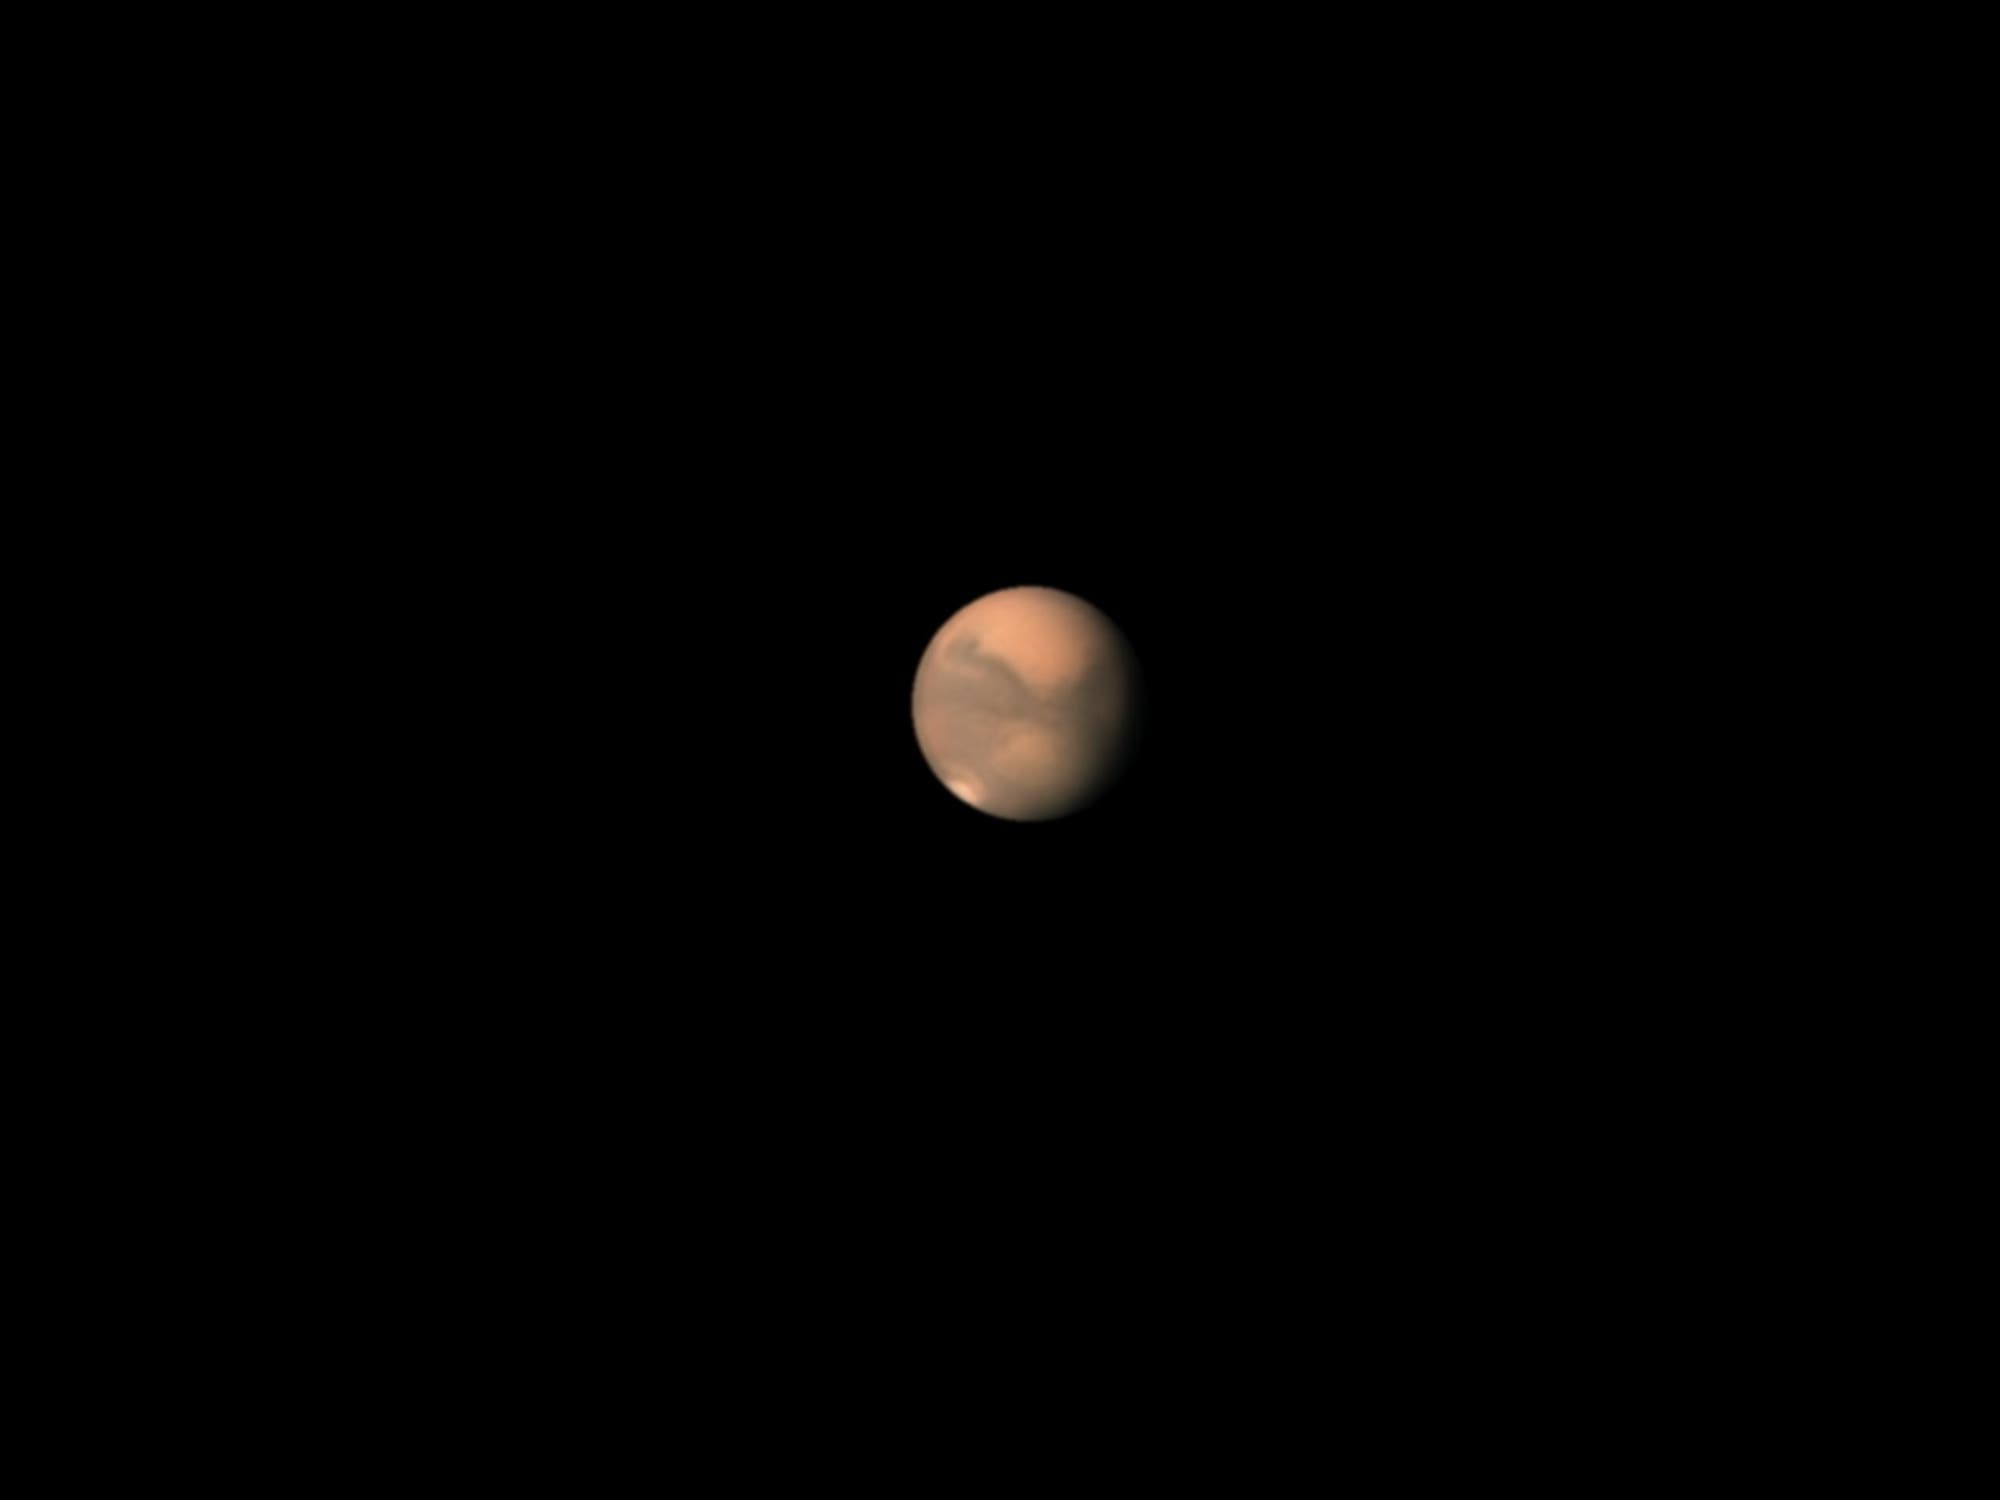 Mars am 23. August 2020, 4:10 Uhr MESZ